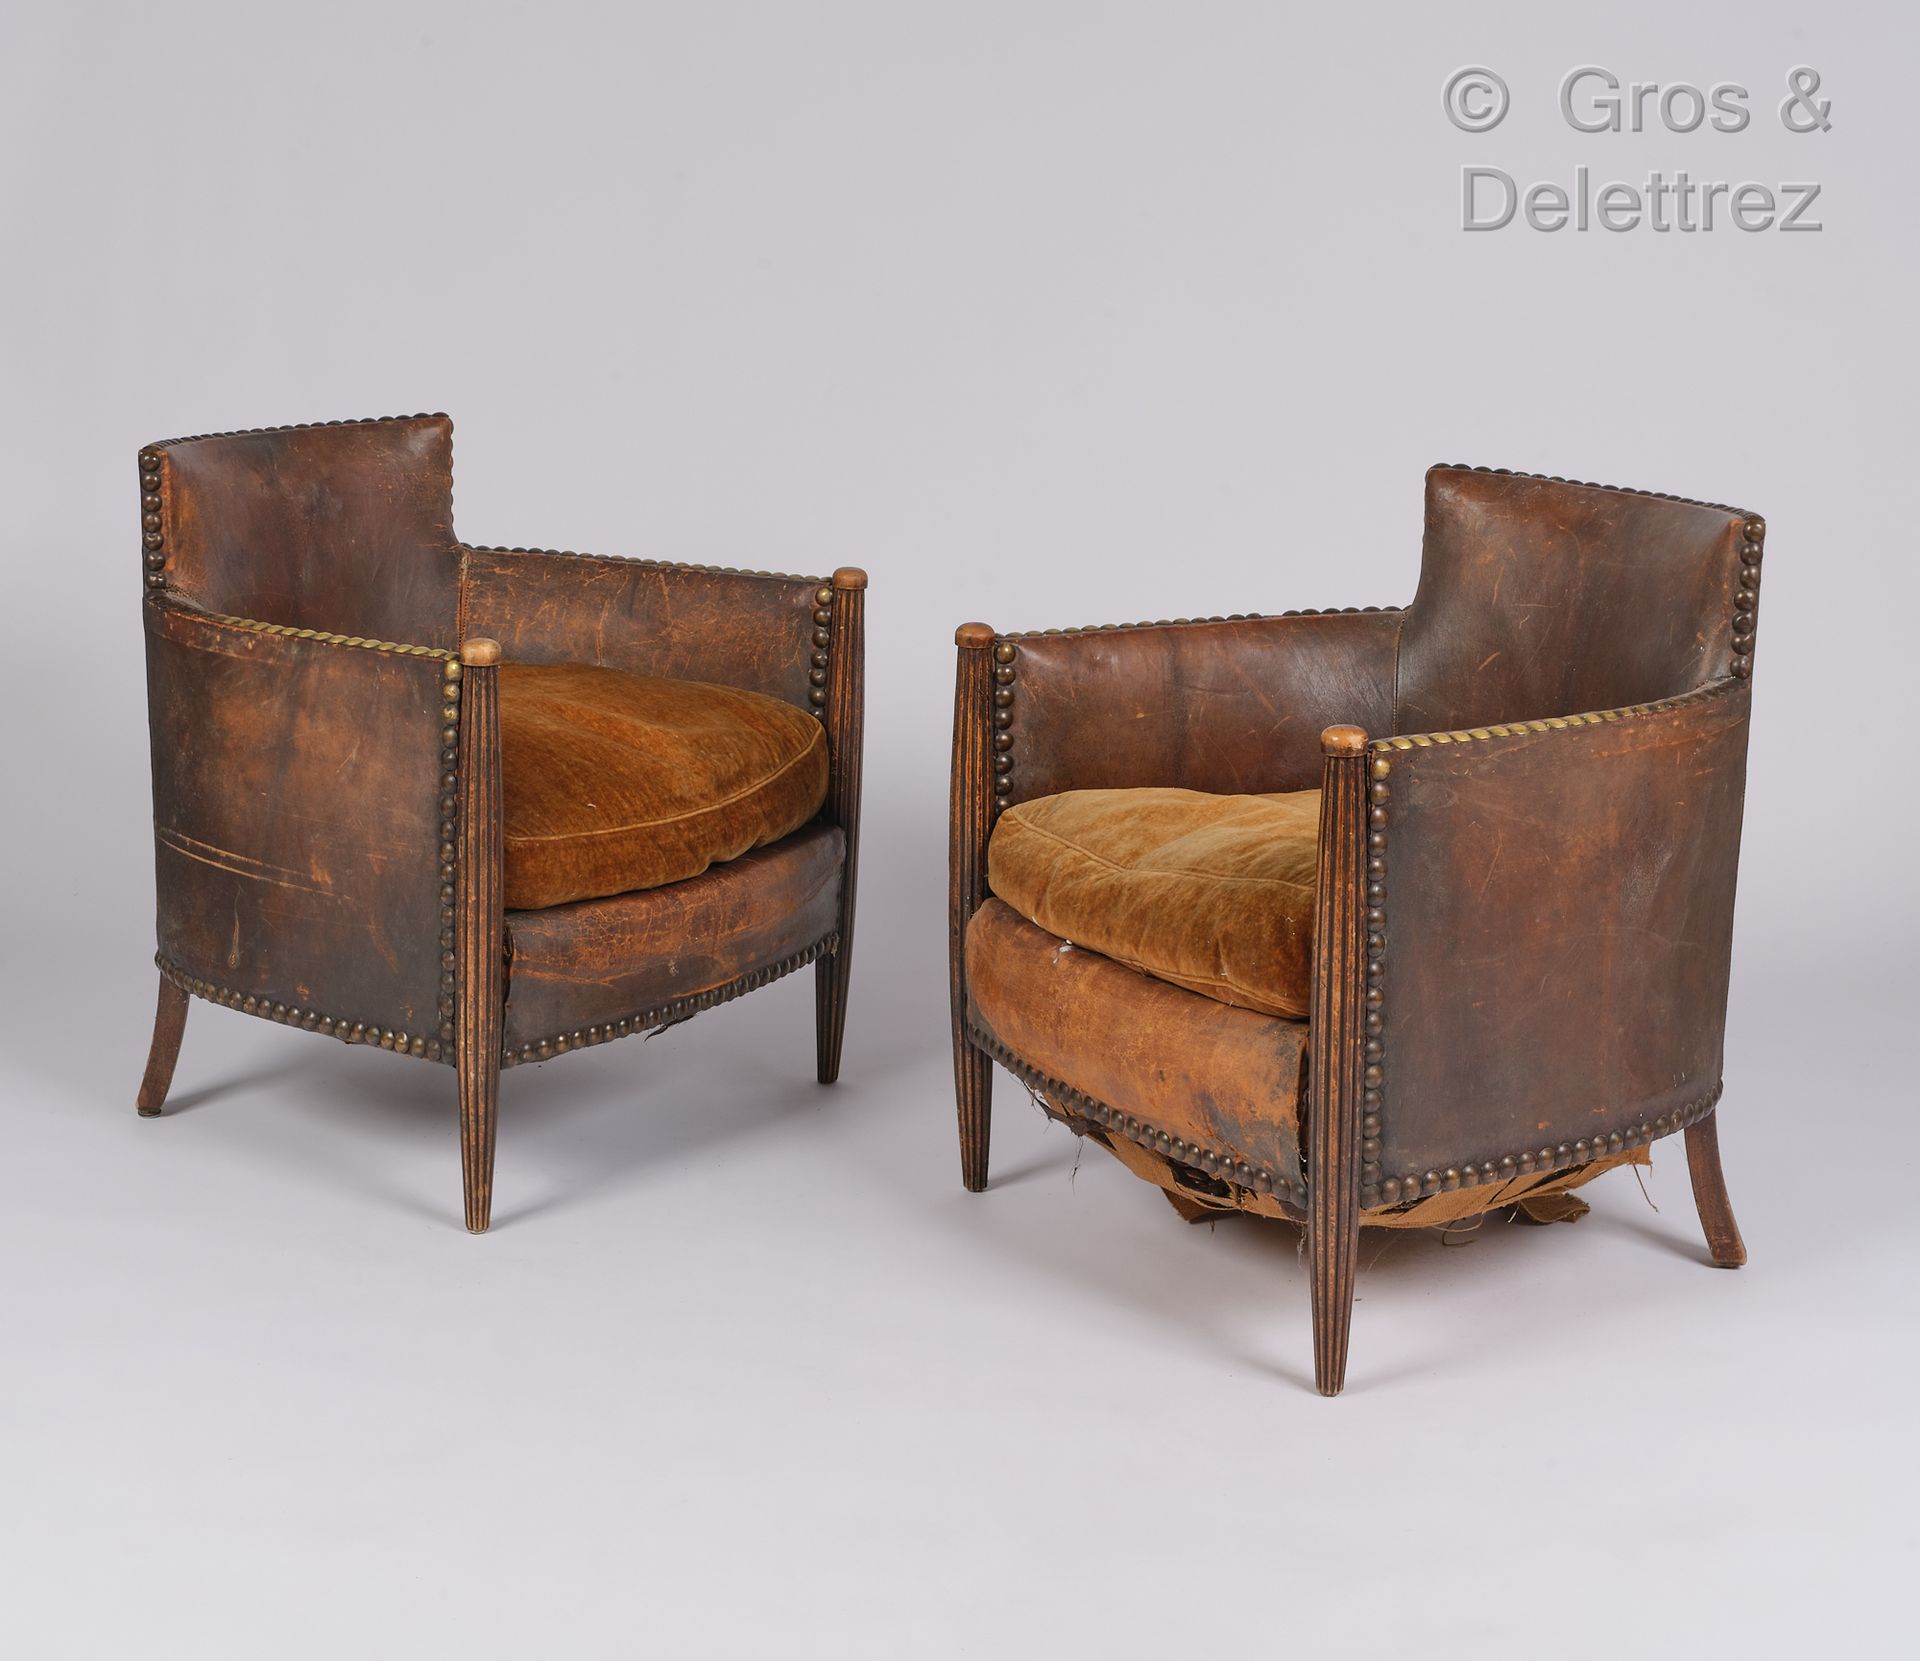 Null Arbeit 1925

Paar Sessel, Vorderbeine aus geriffeltem Holz, Garnitur aus br&hellip;